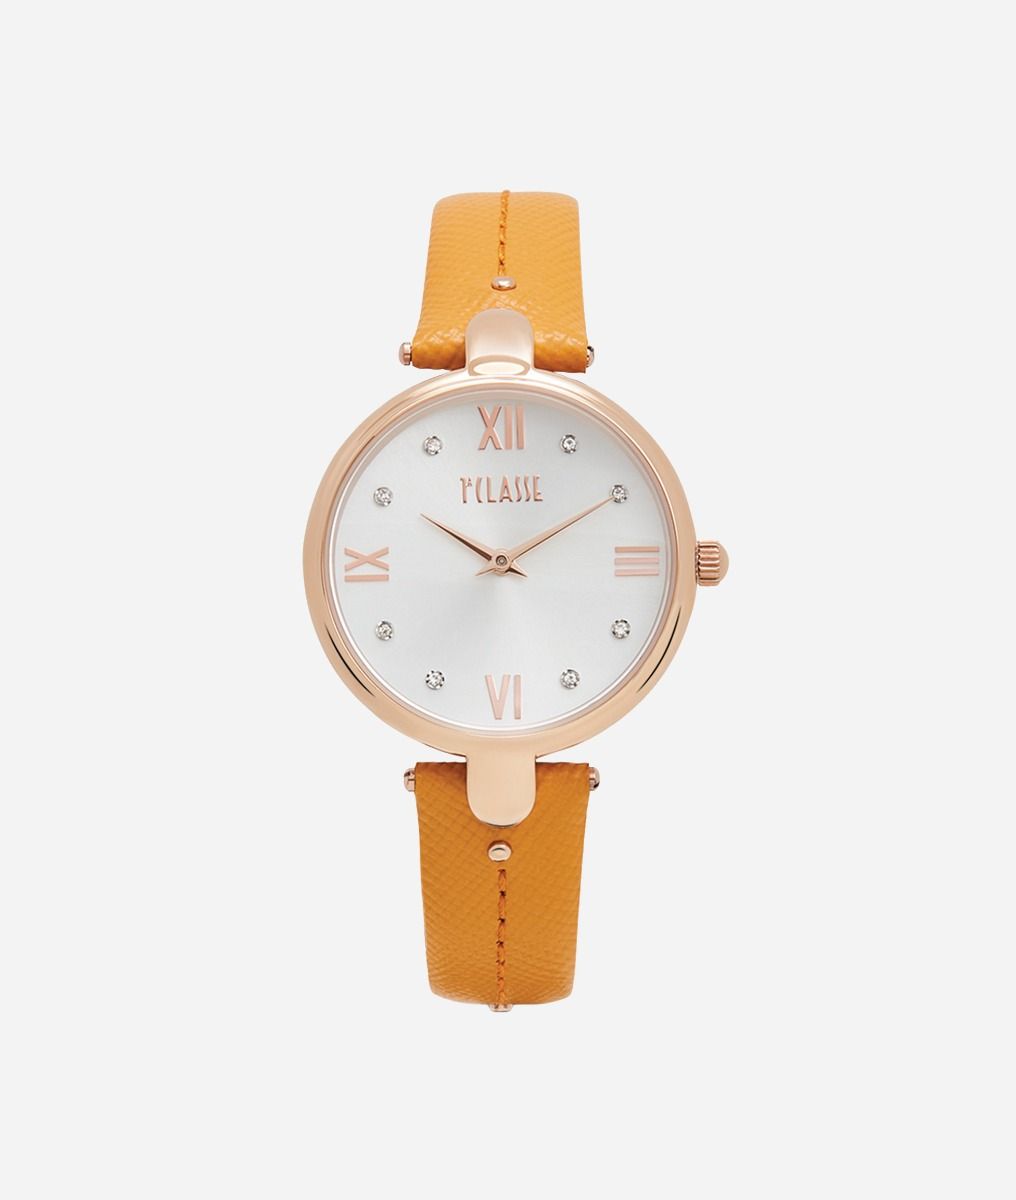 Santorini orologio con cinturino in pelle stampa saffiano Zafferano,front